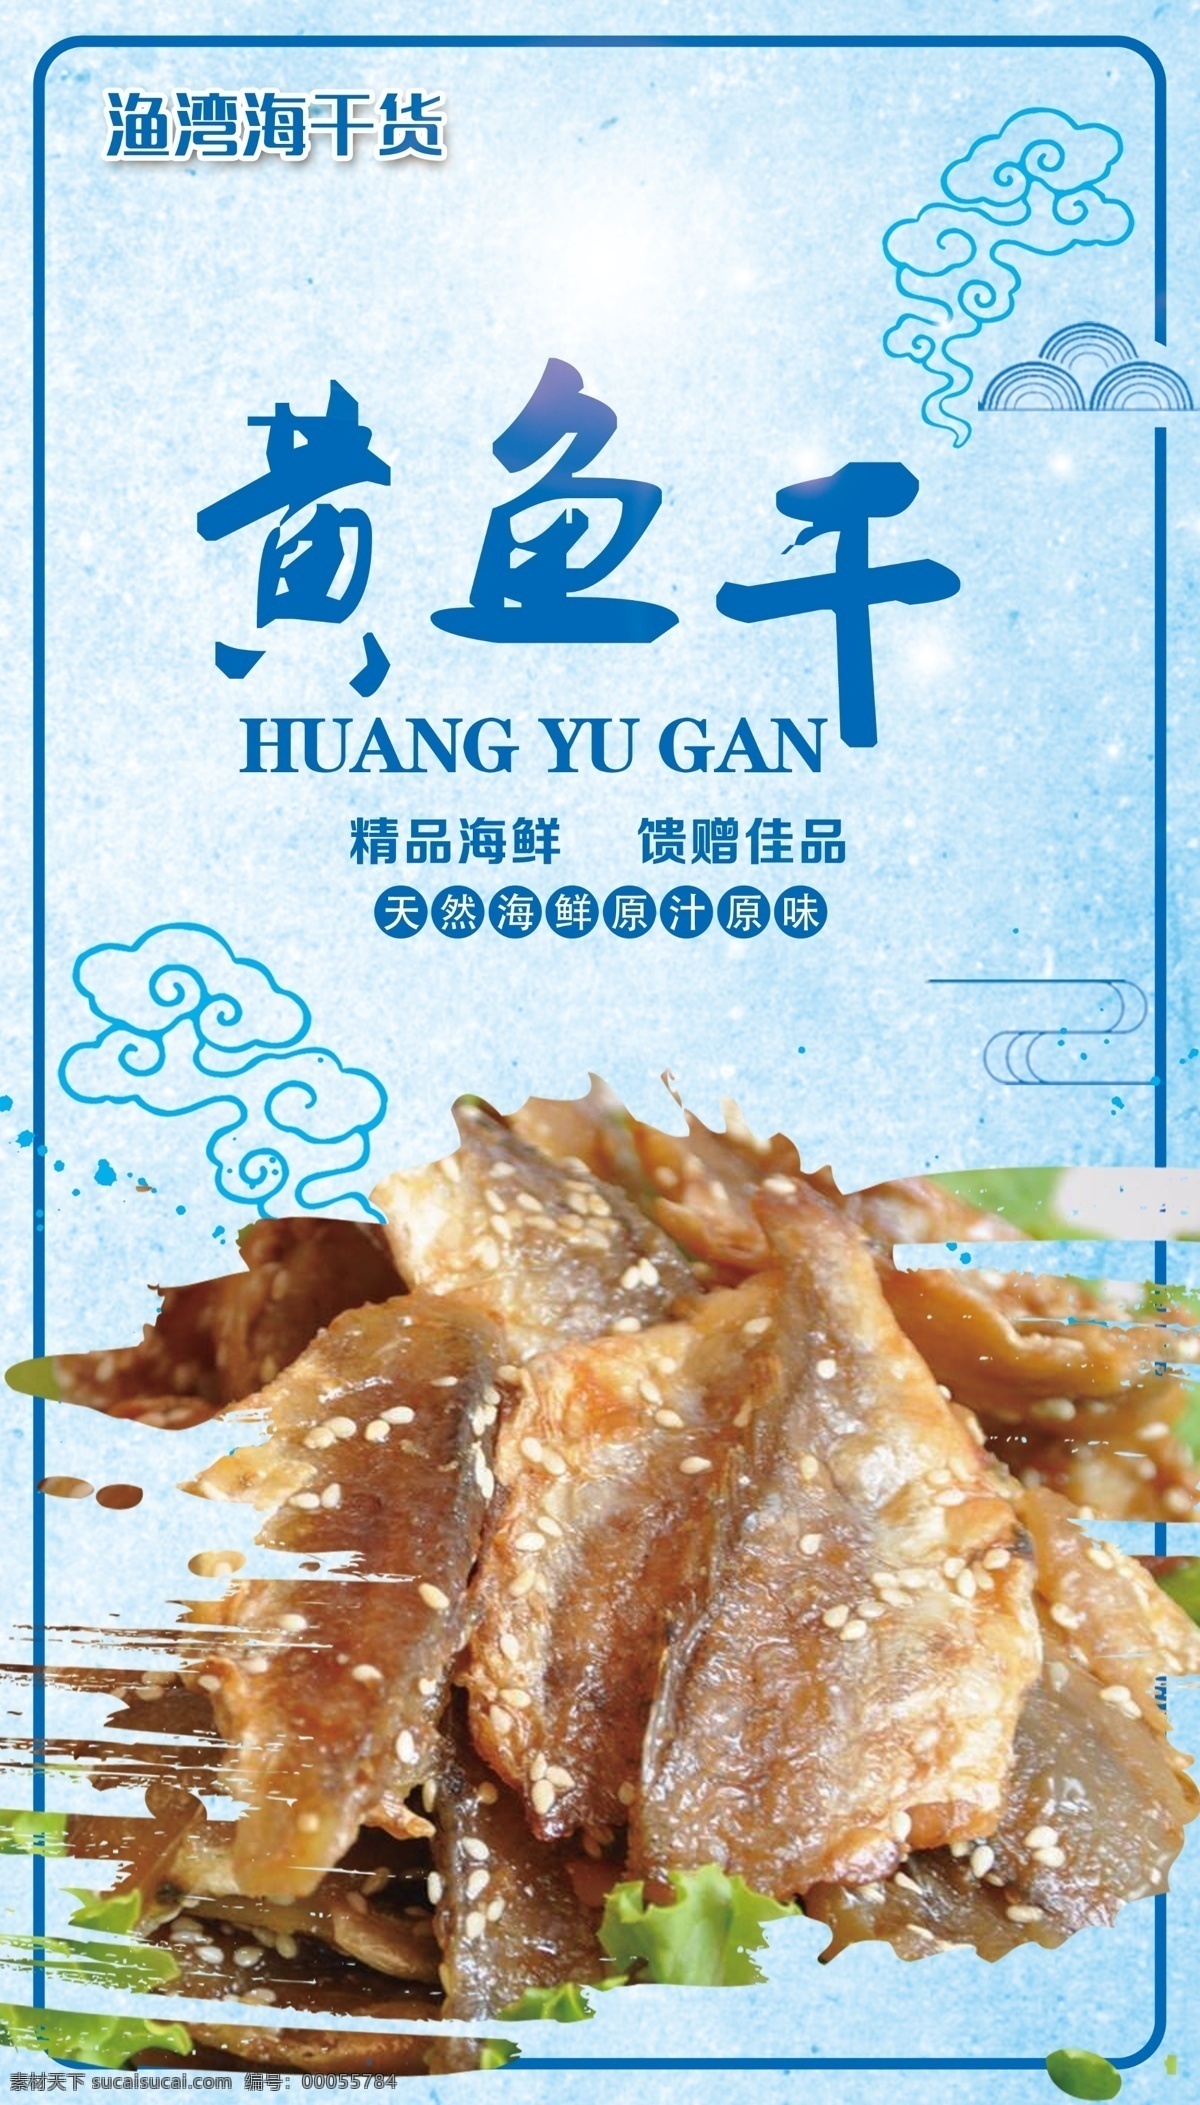 海鲜 海报 黄鱼 海米 蓝色图片 虾米 蓝色 海浪 海干货 分层